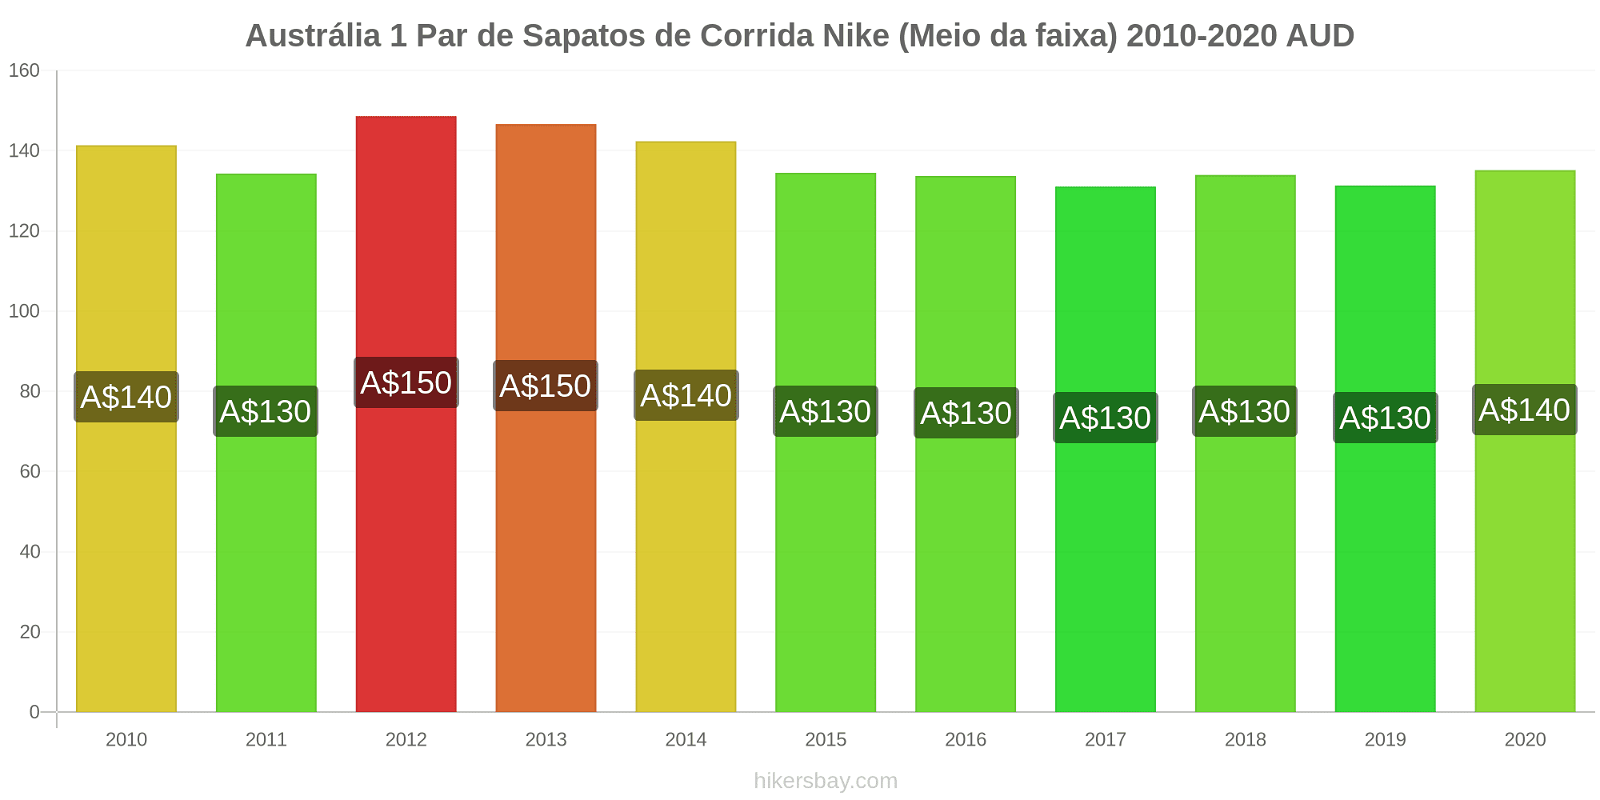 Austrália variação de preço 1 par de tênis Nike (mid-range) hikersbay.com